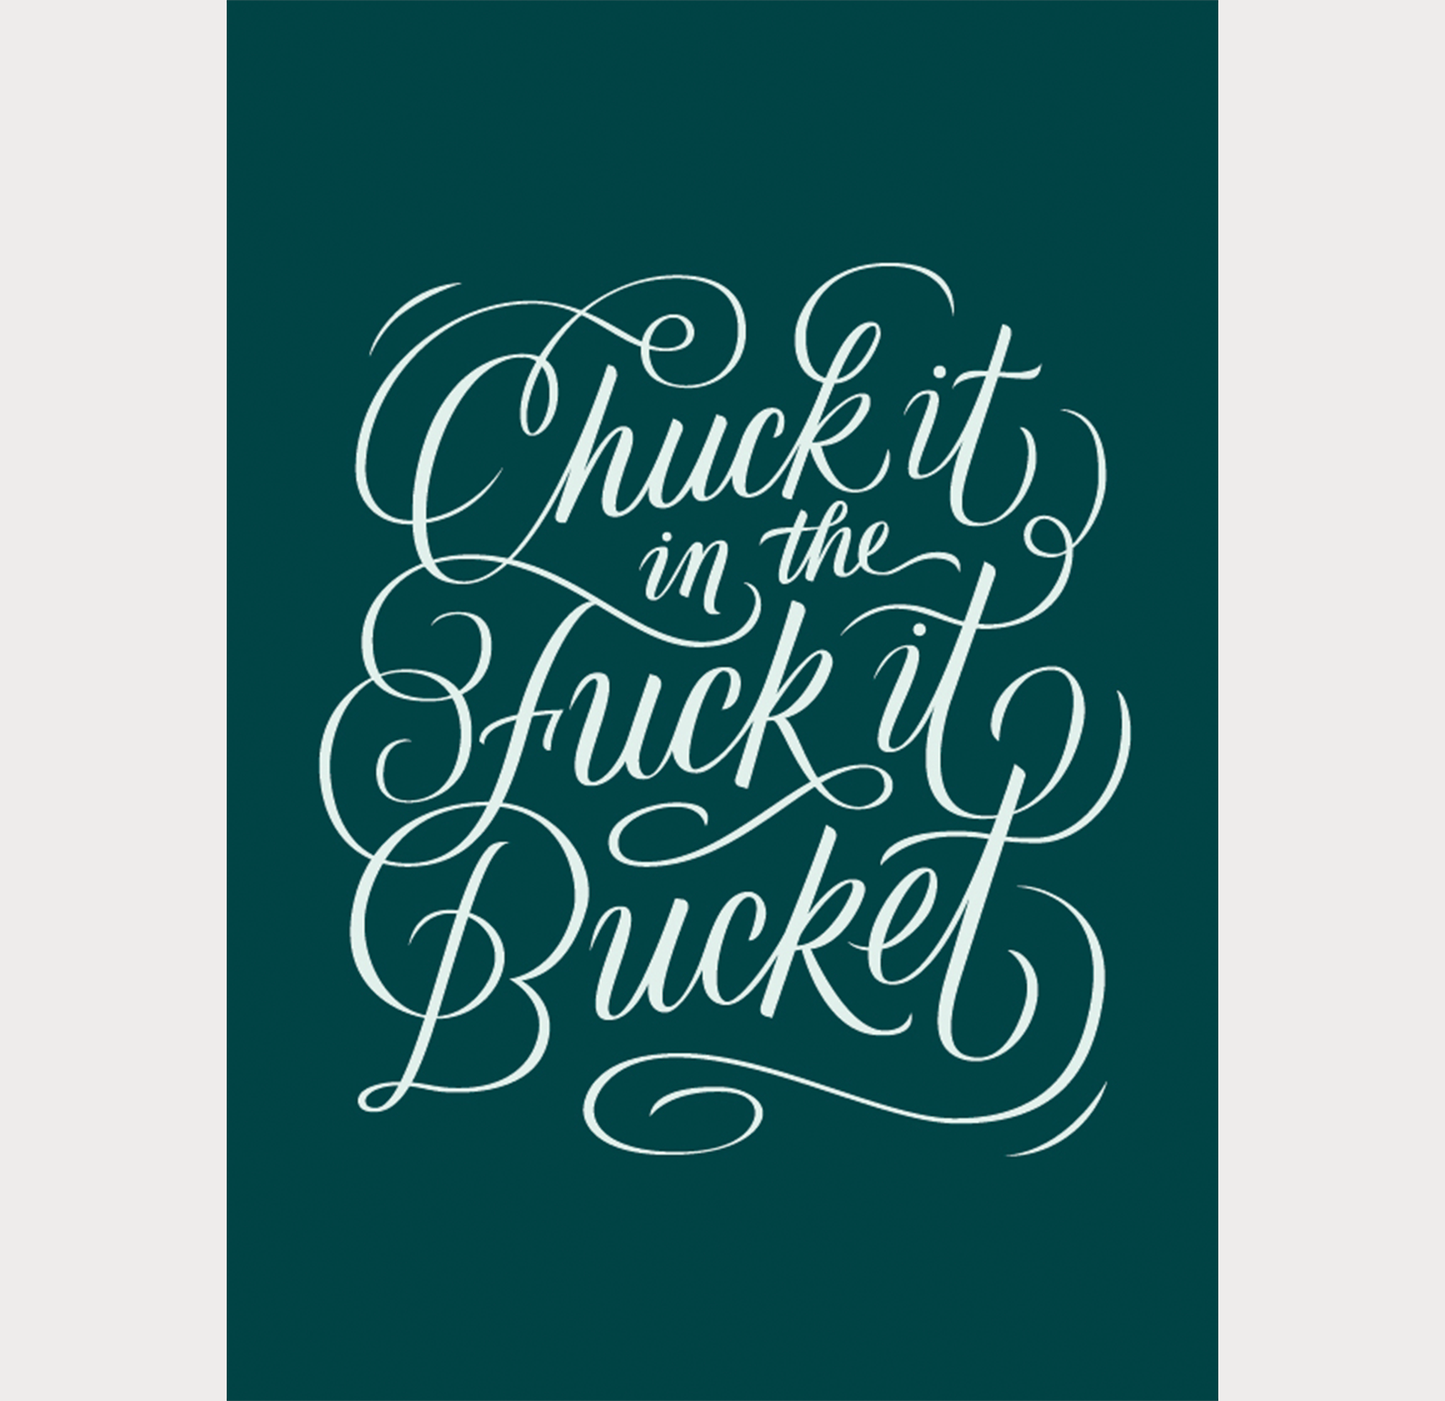 Chuck it in the F*ck-it Bucket